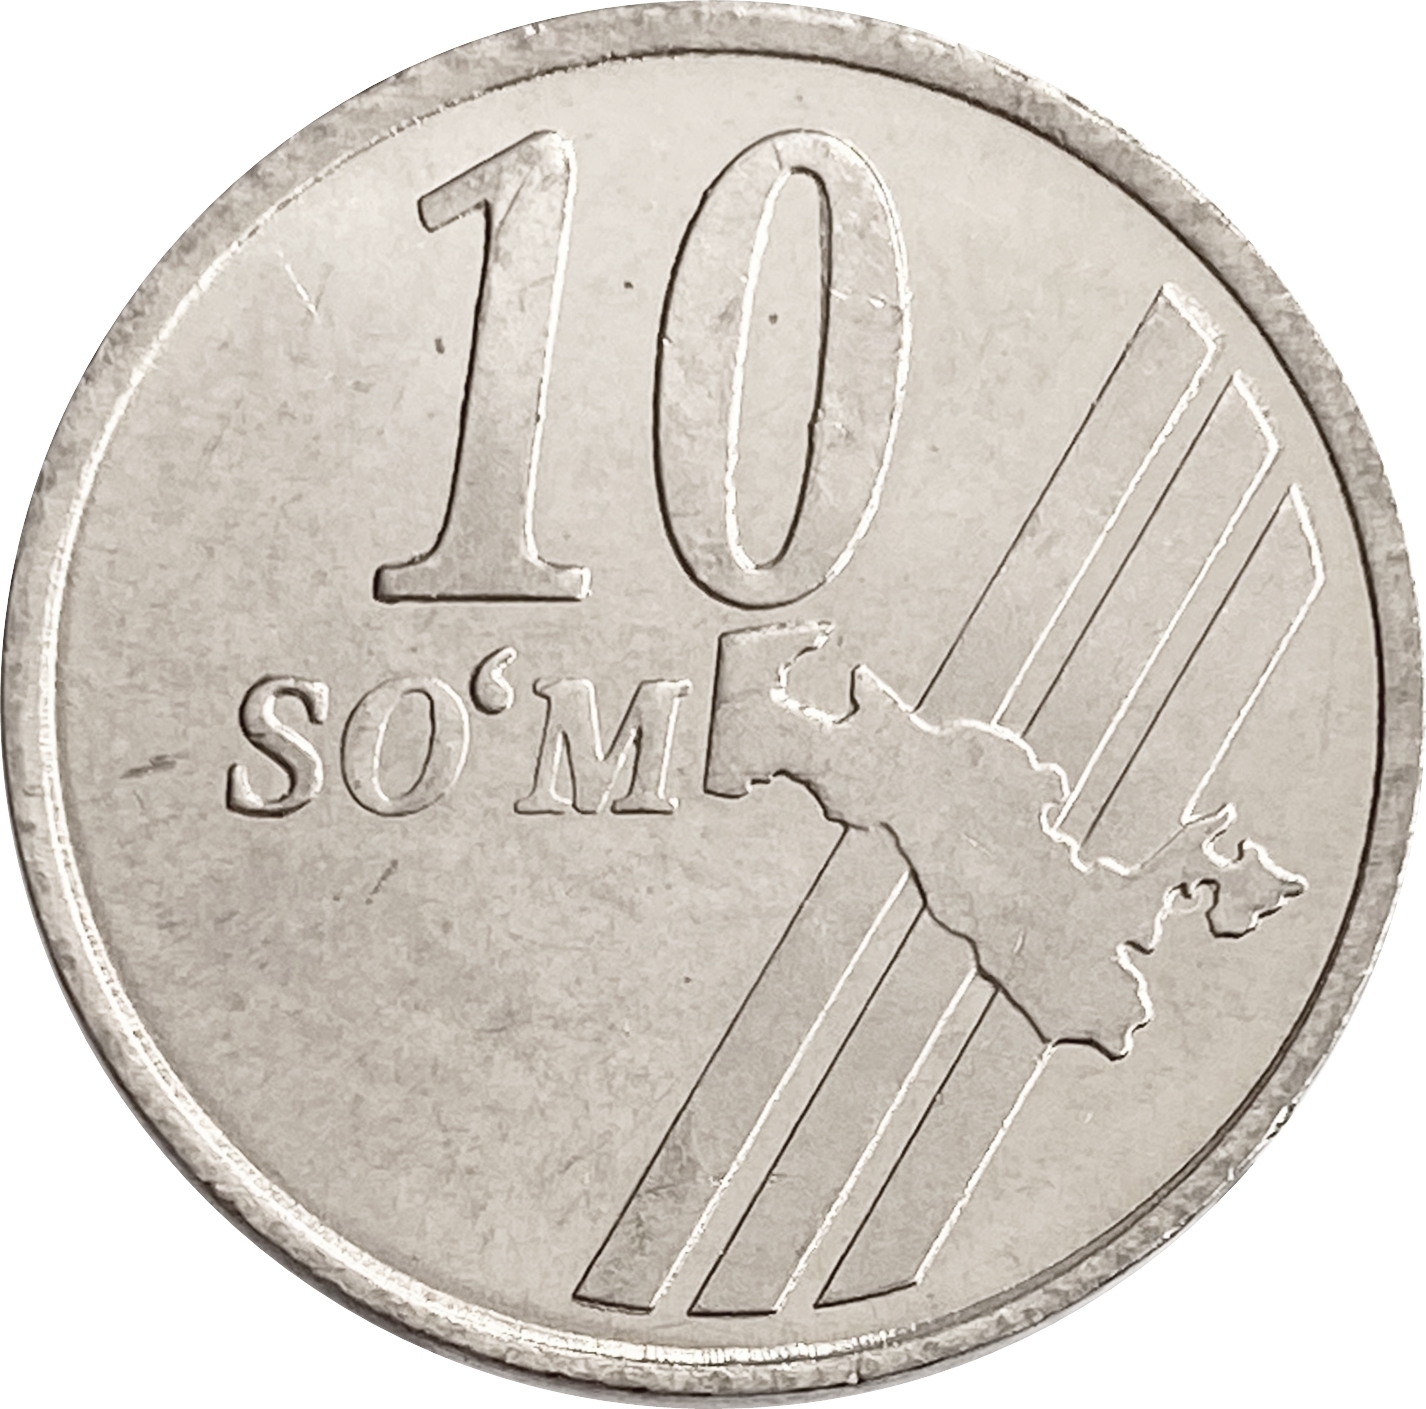 Монеты 2001 года цена стоимость монеты. 10 Сум монета. Монеты 2001 года. Монеты Узбекистана. Узбекские монеты современные.